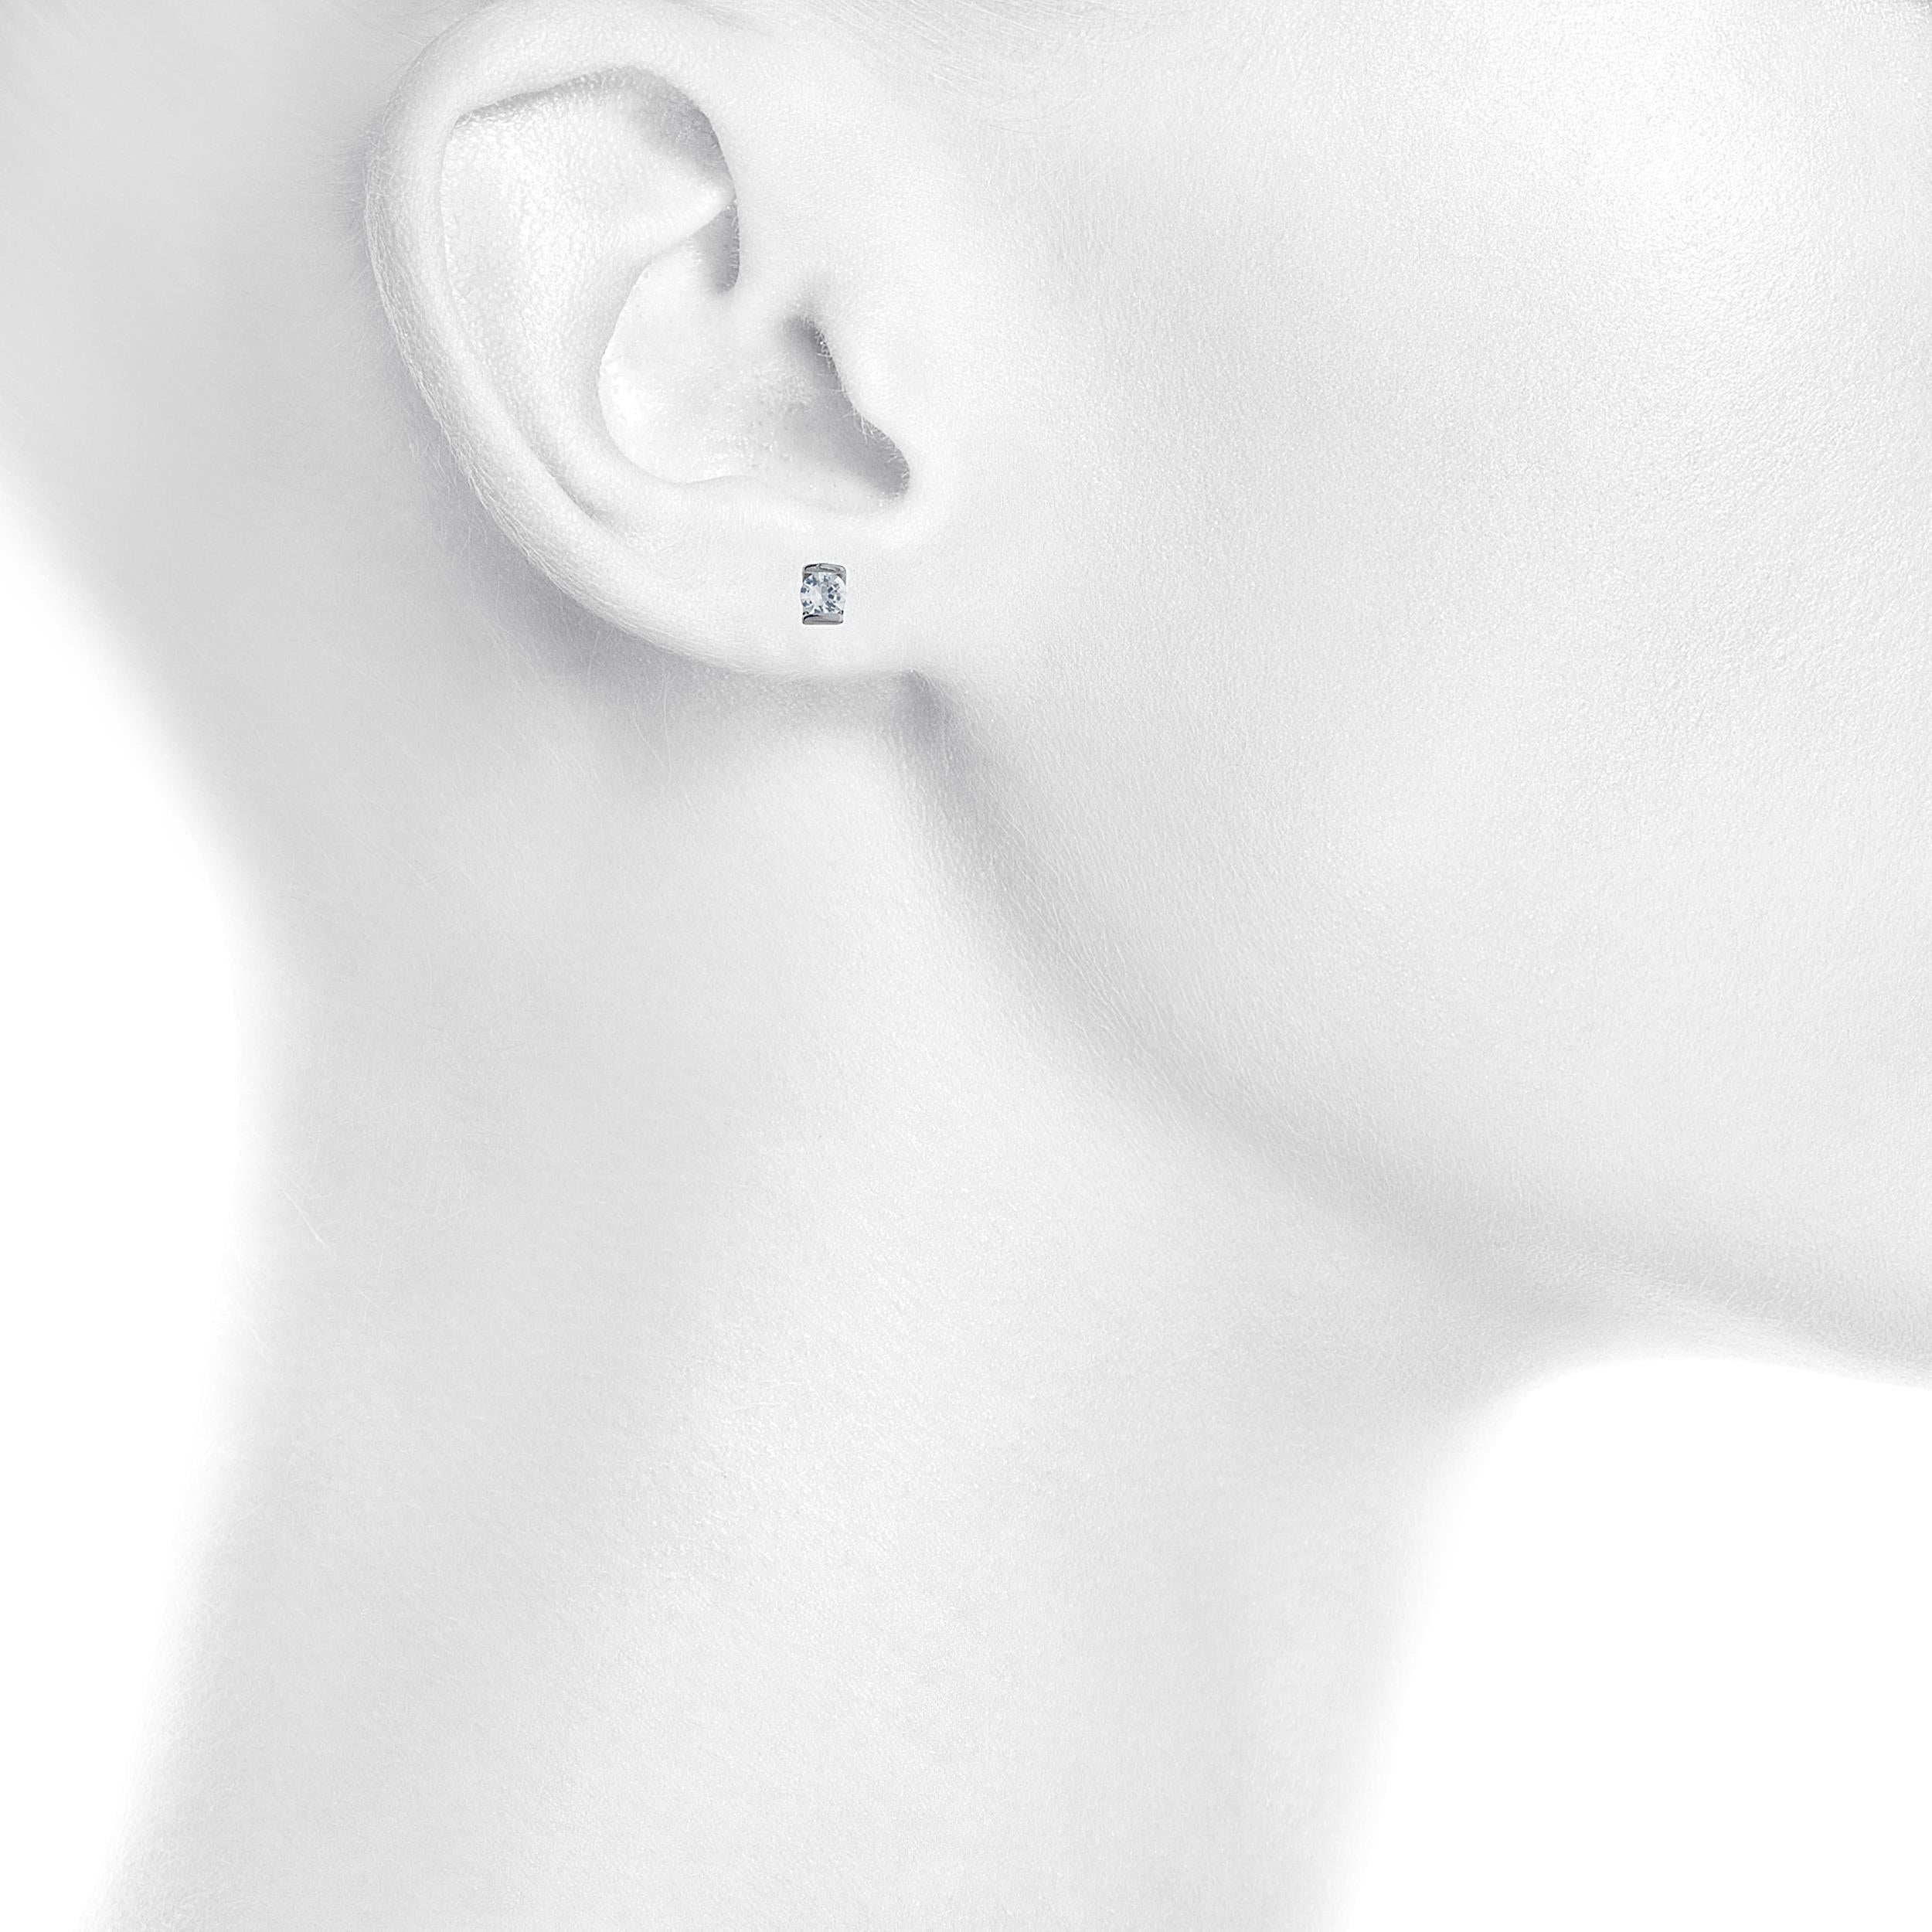 White Sapphire Half Channel Stud Earrings .925 Sterling Silver